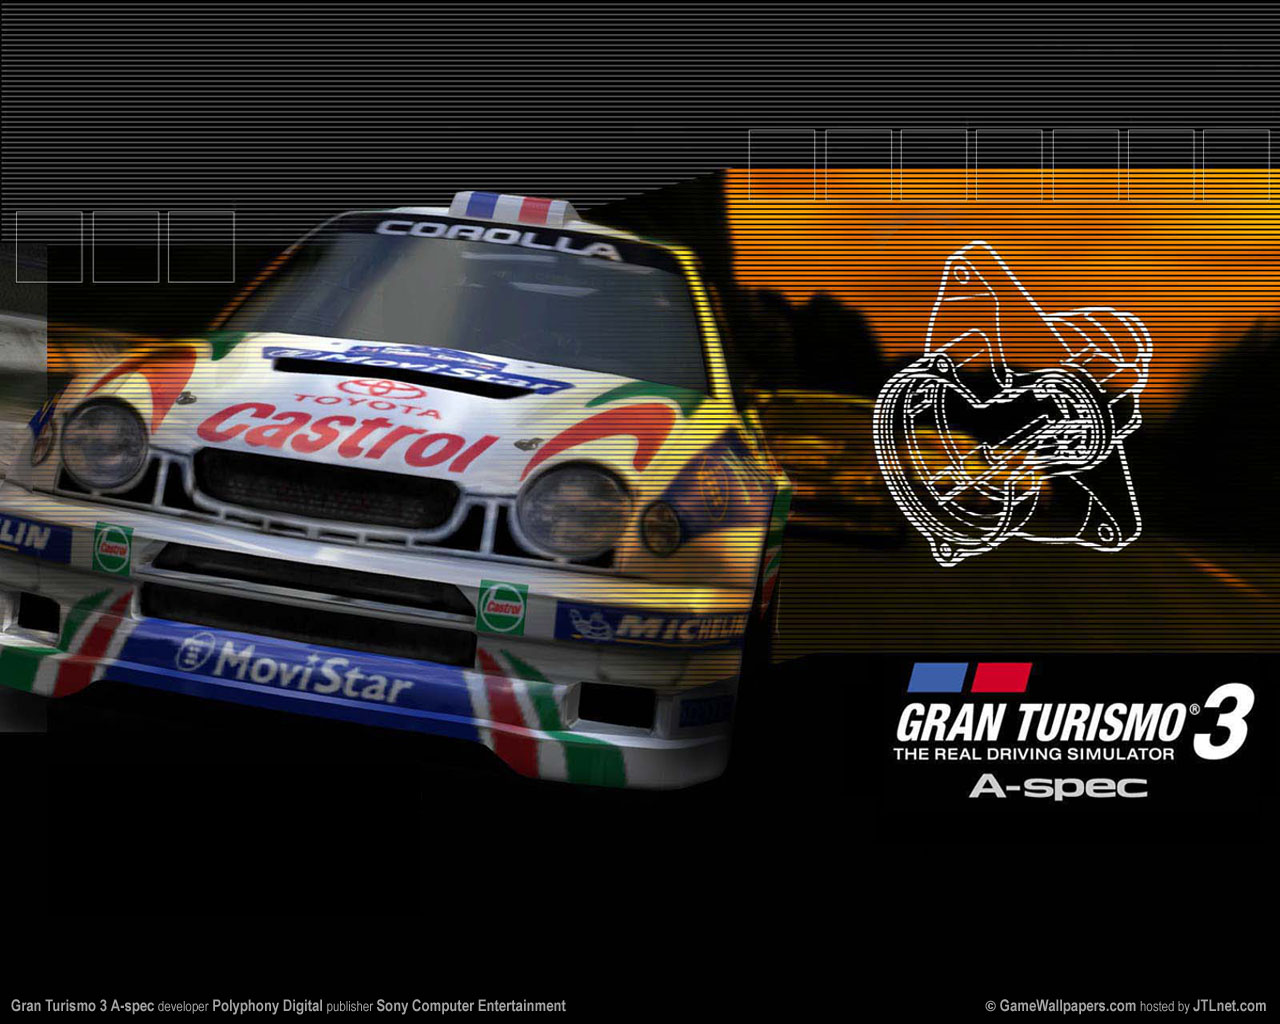 Gran Turismo 3 A-spec fond d'cran 03 1280x1024